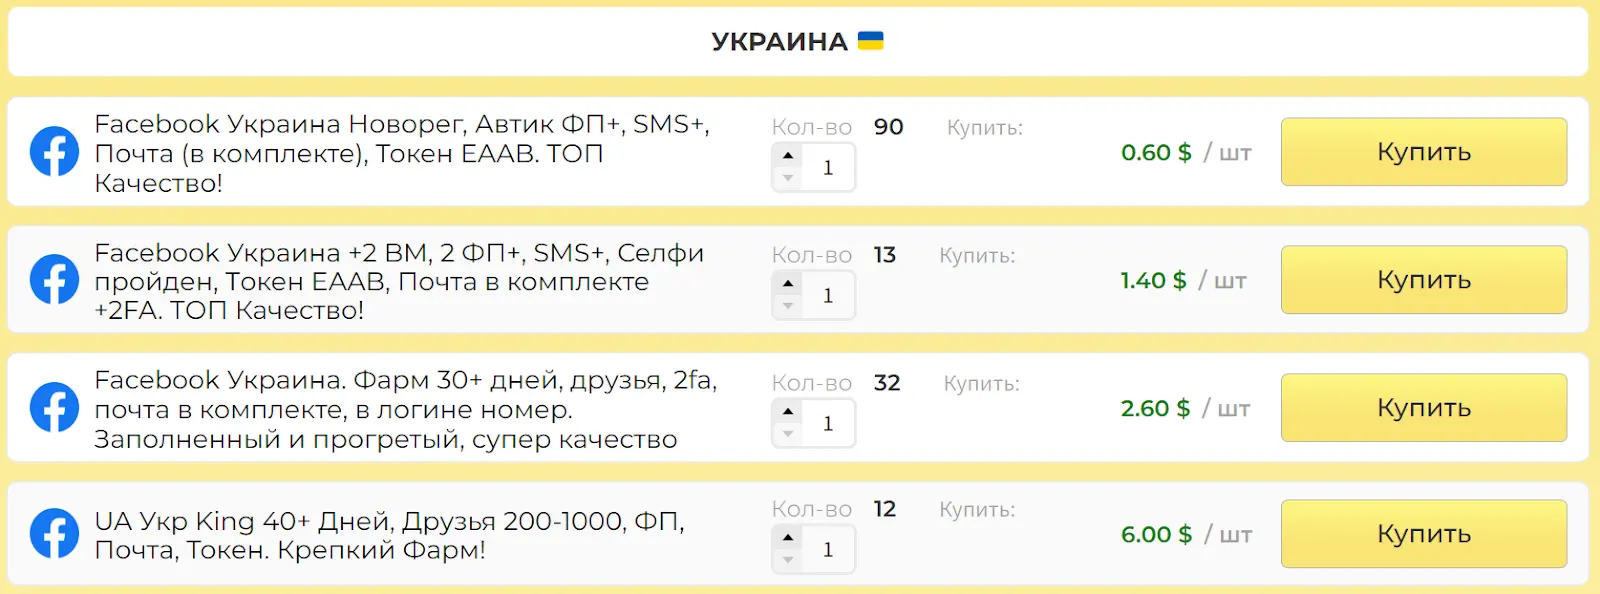 Пример аккаунтов с ГЕО Украина в AB SHOP